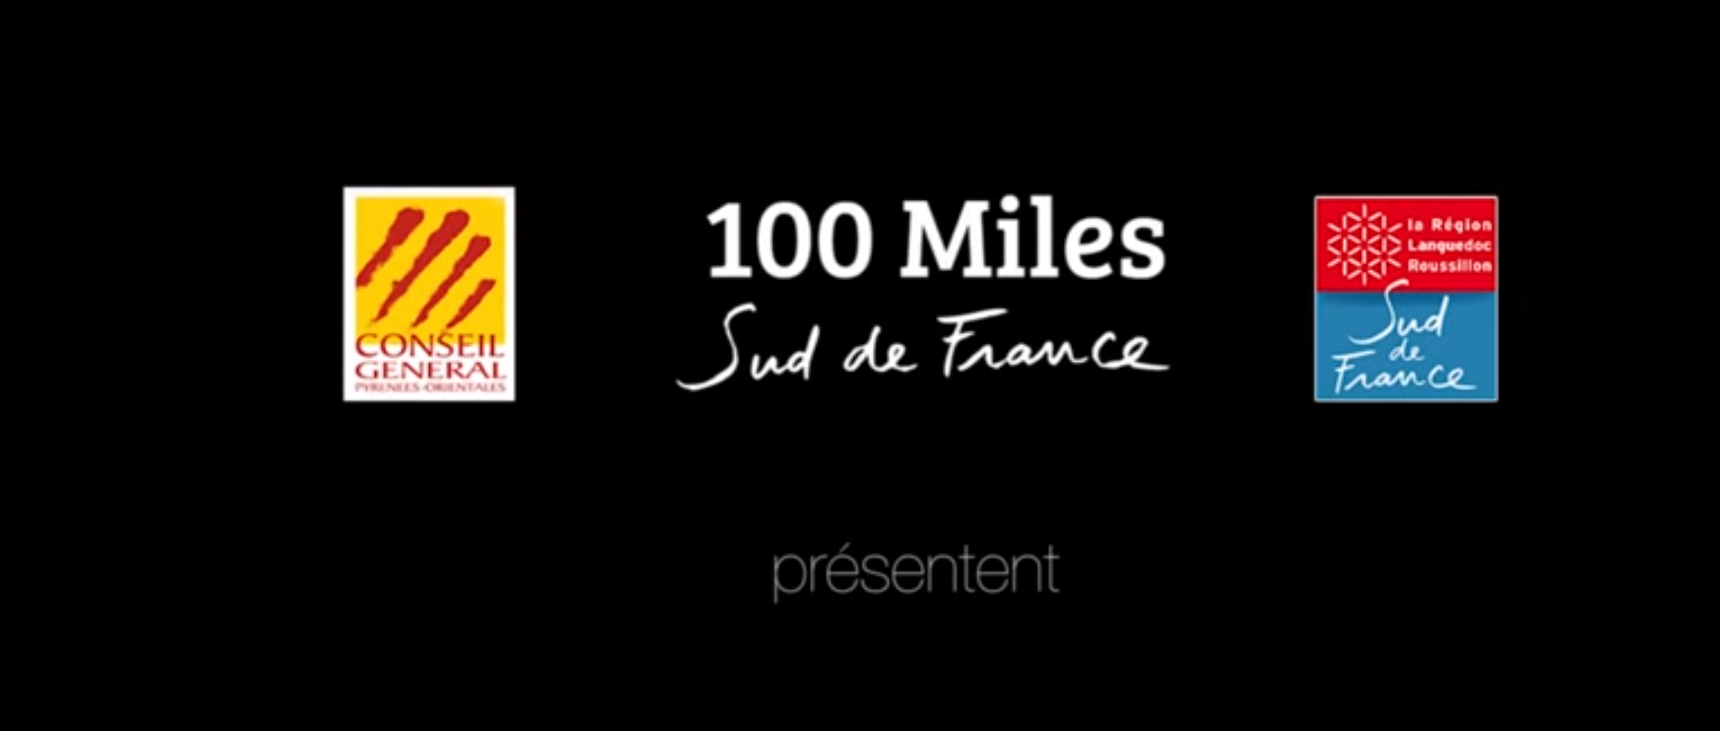 100 MILES SUD DE FRANCE